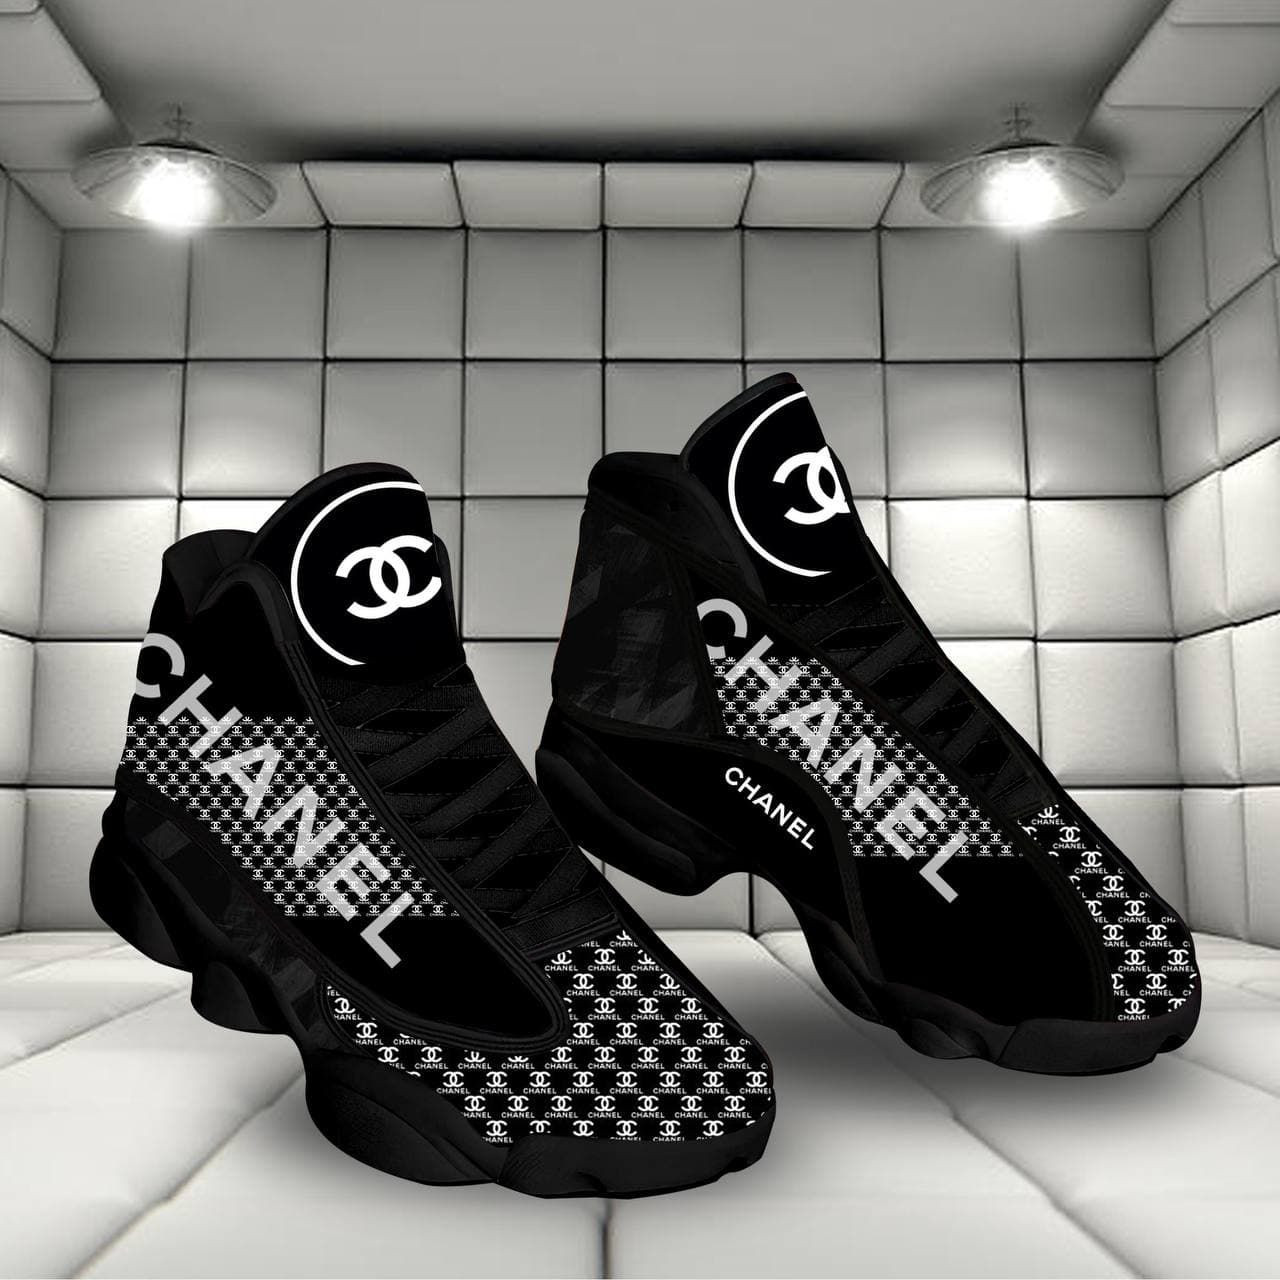 Chanel luxury form air jordan 13 shoes sneaker - sneaker hot shoes -gif for fan like sneaker - men-13